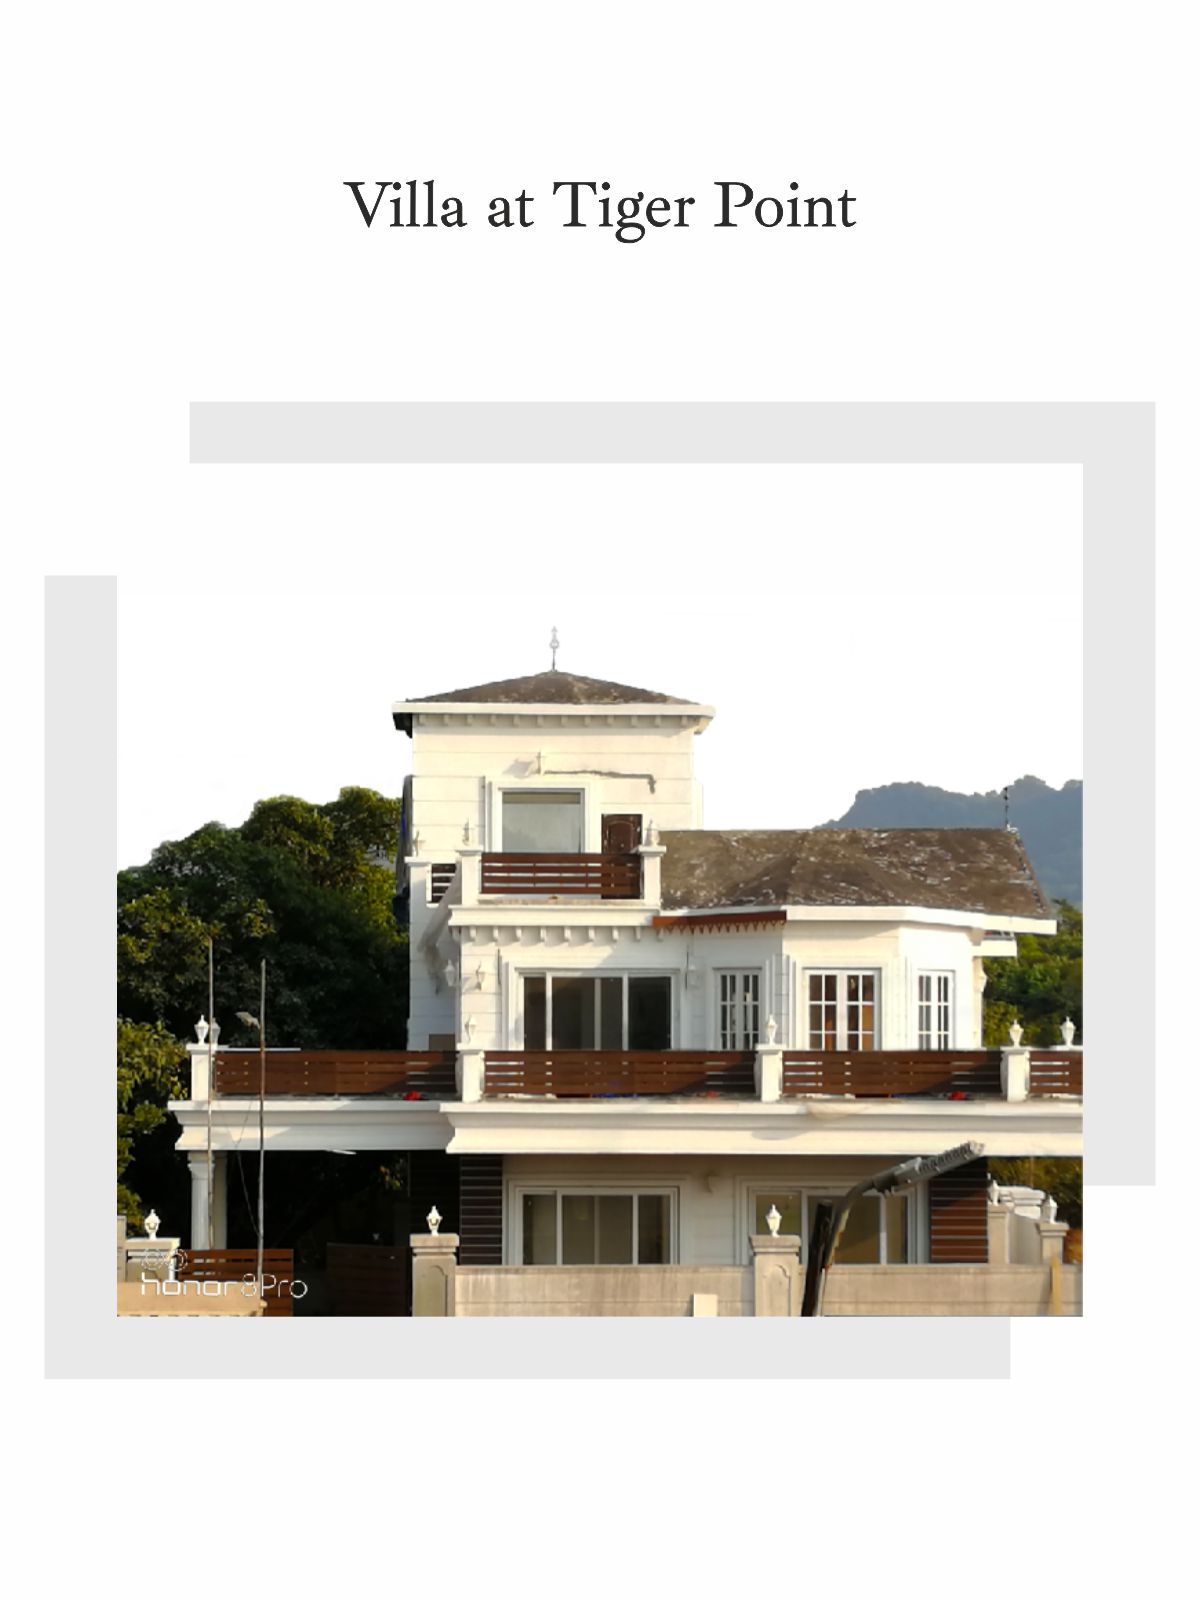 Villa at tiger point